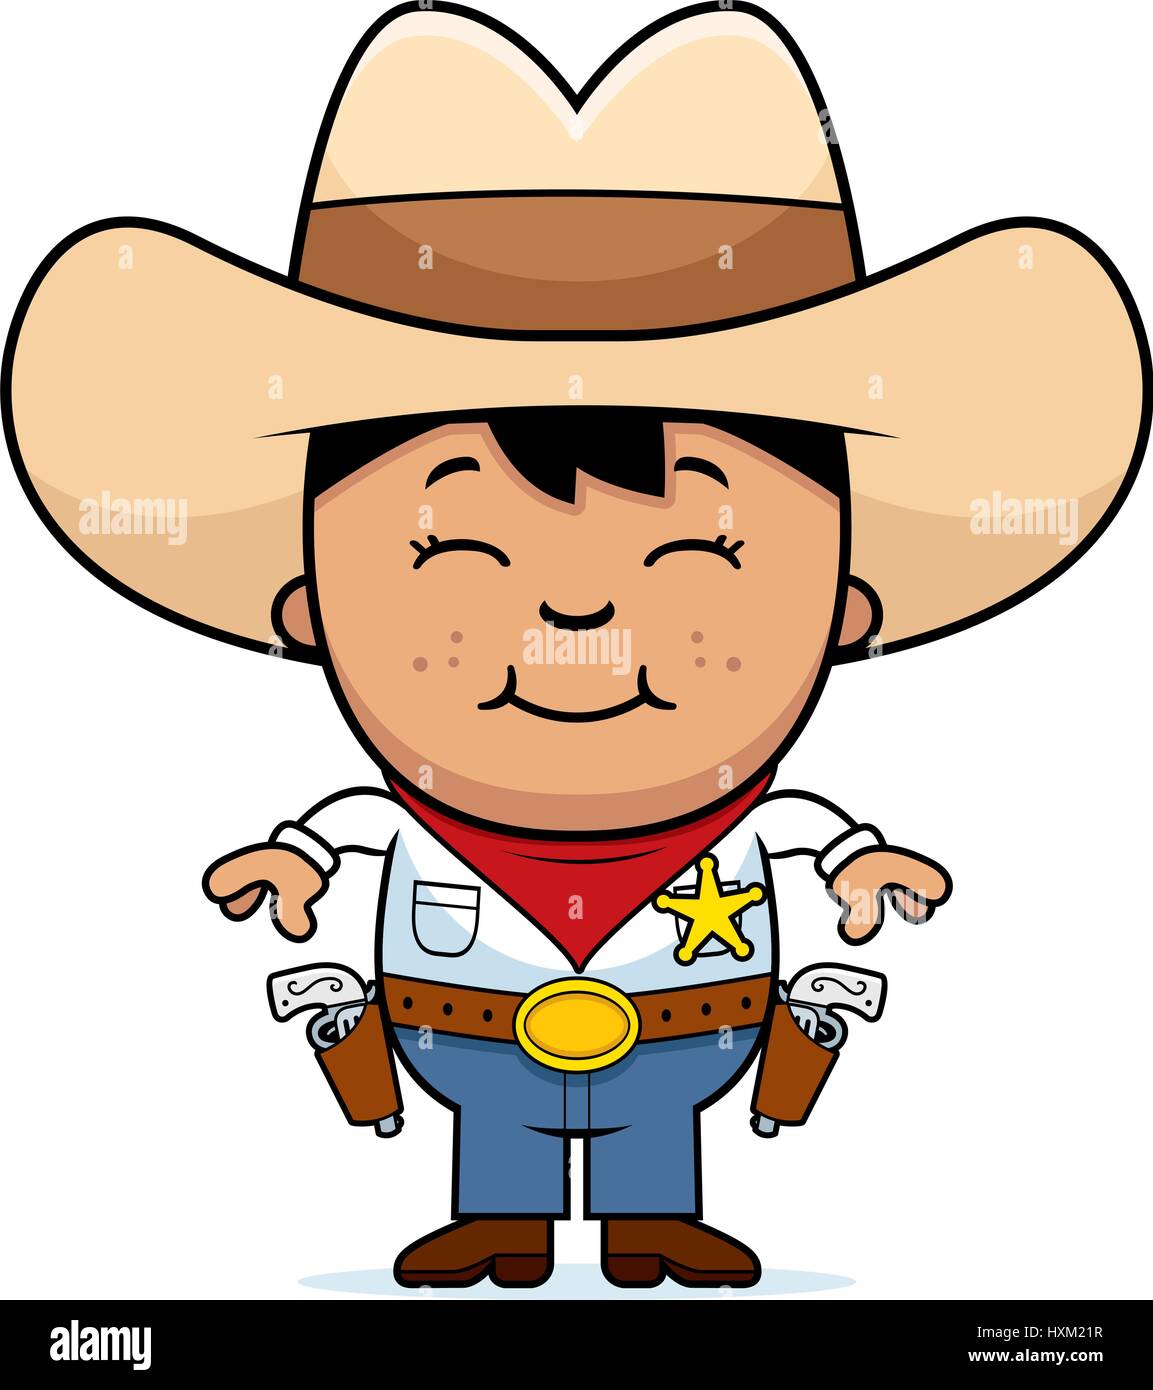 Un cartoon illustration d'un petit cowboy standing and smiling Image  Vectorielle Stock - Alamy